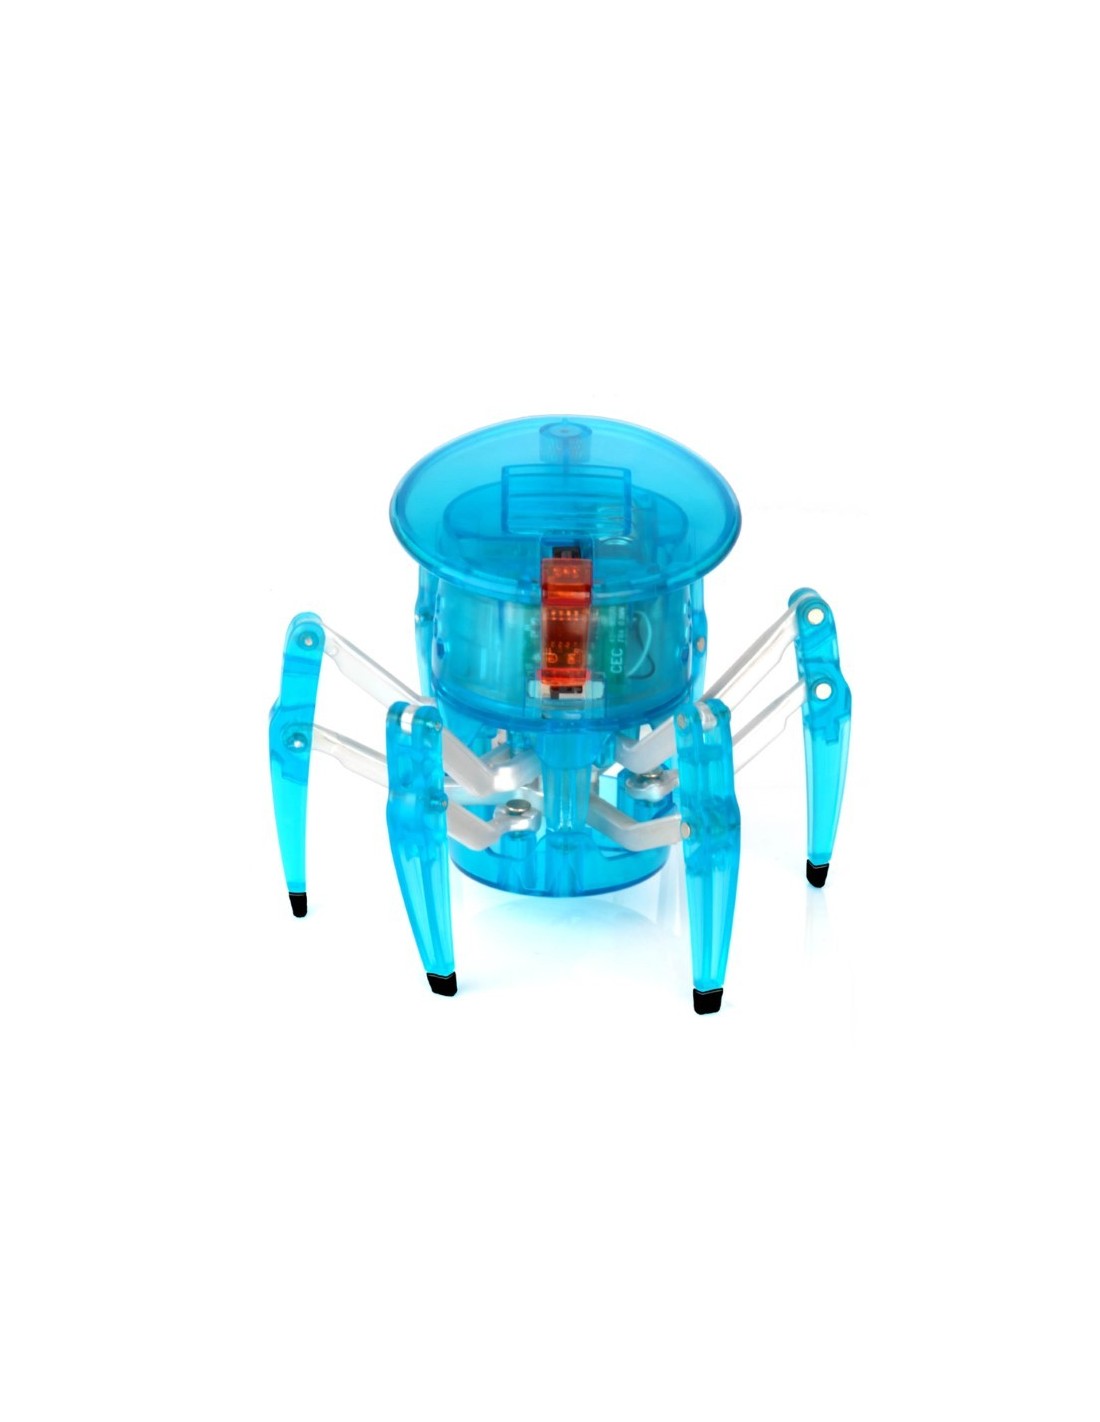 HexBug - Spider bestuurbaar Magnetisch robot speelgoed